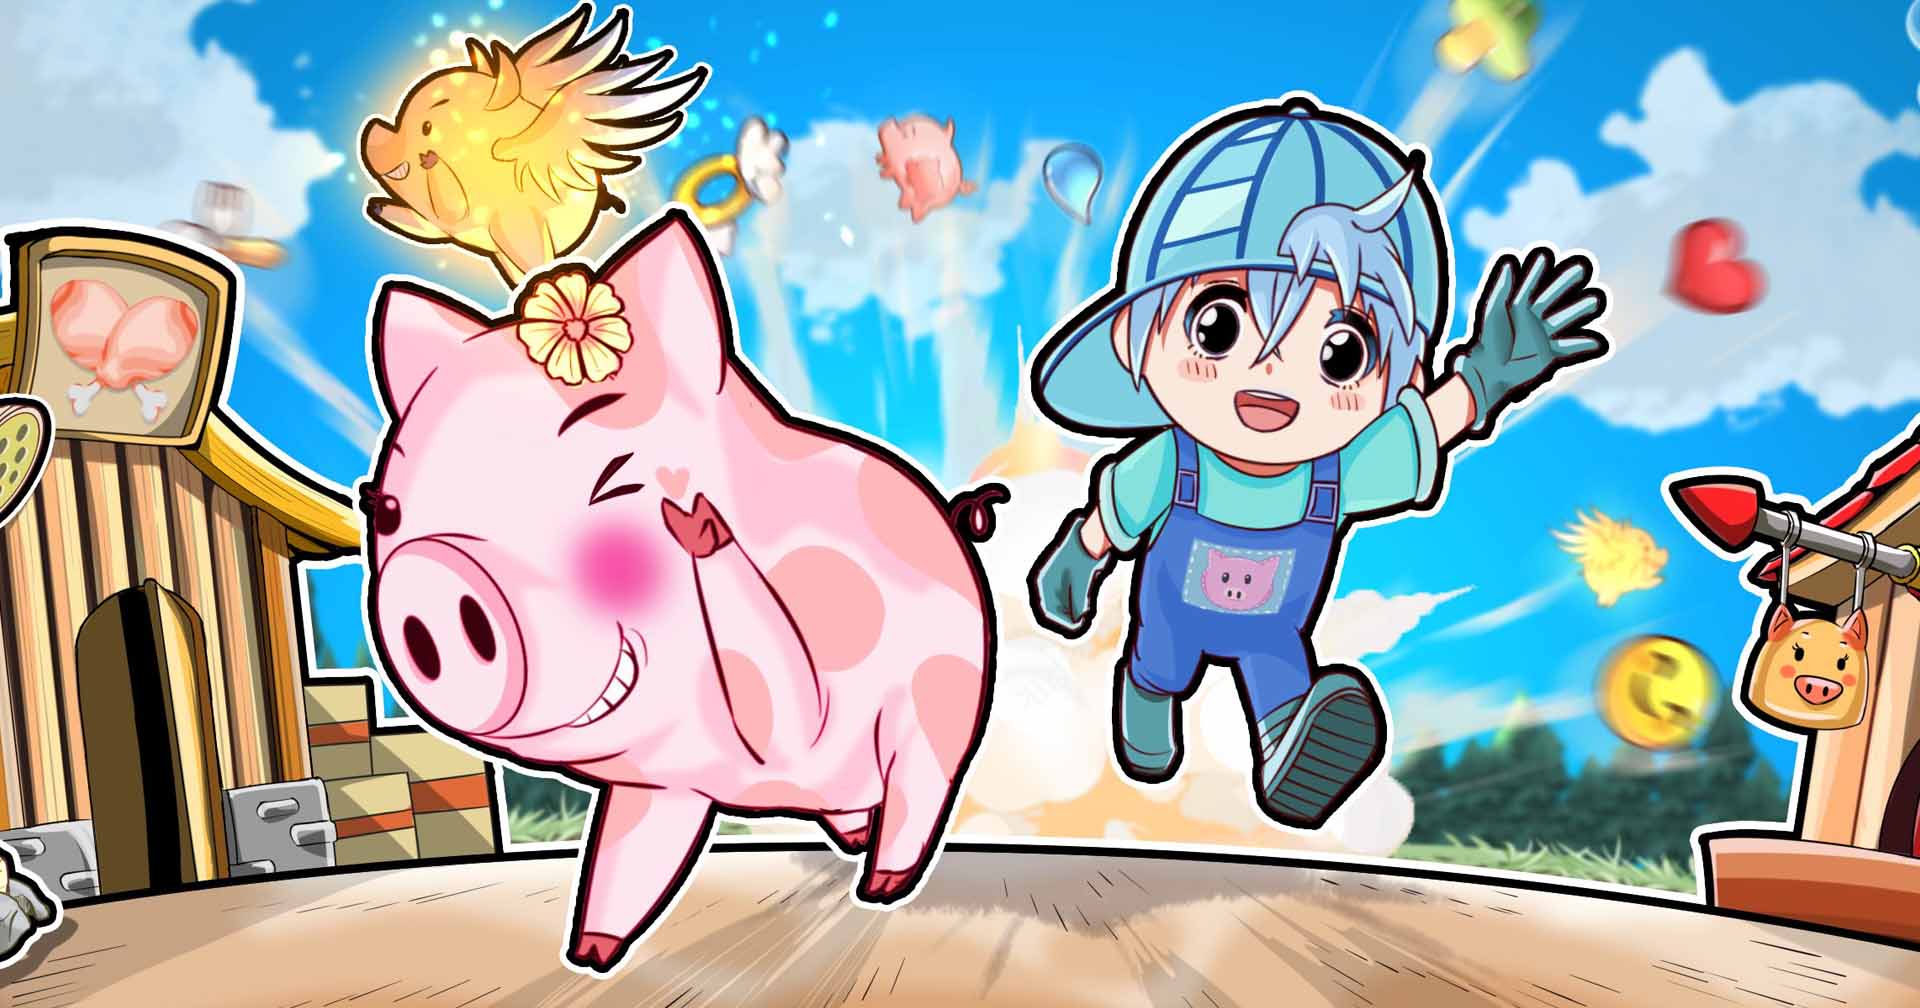 [รีวิวเกม] Piggy เลี้ยงหมูกับเพื่อน เปิดทดลองเล่น ให้ย้อนวันวานเป็นโจรขโมยหมูอีกครั้ง!